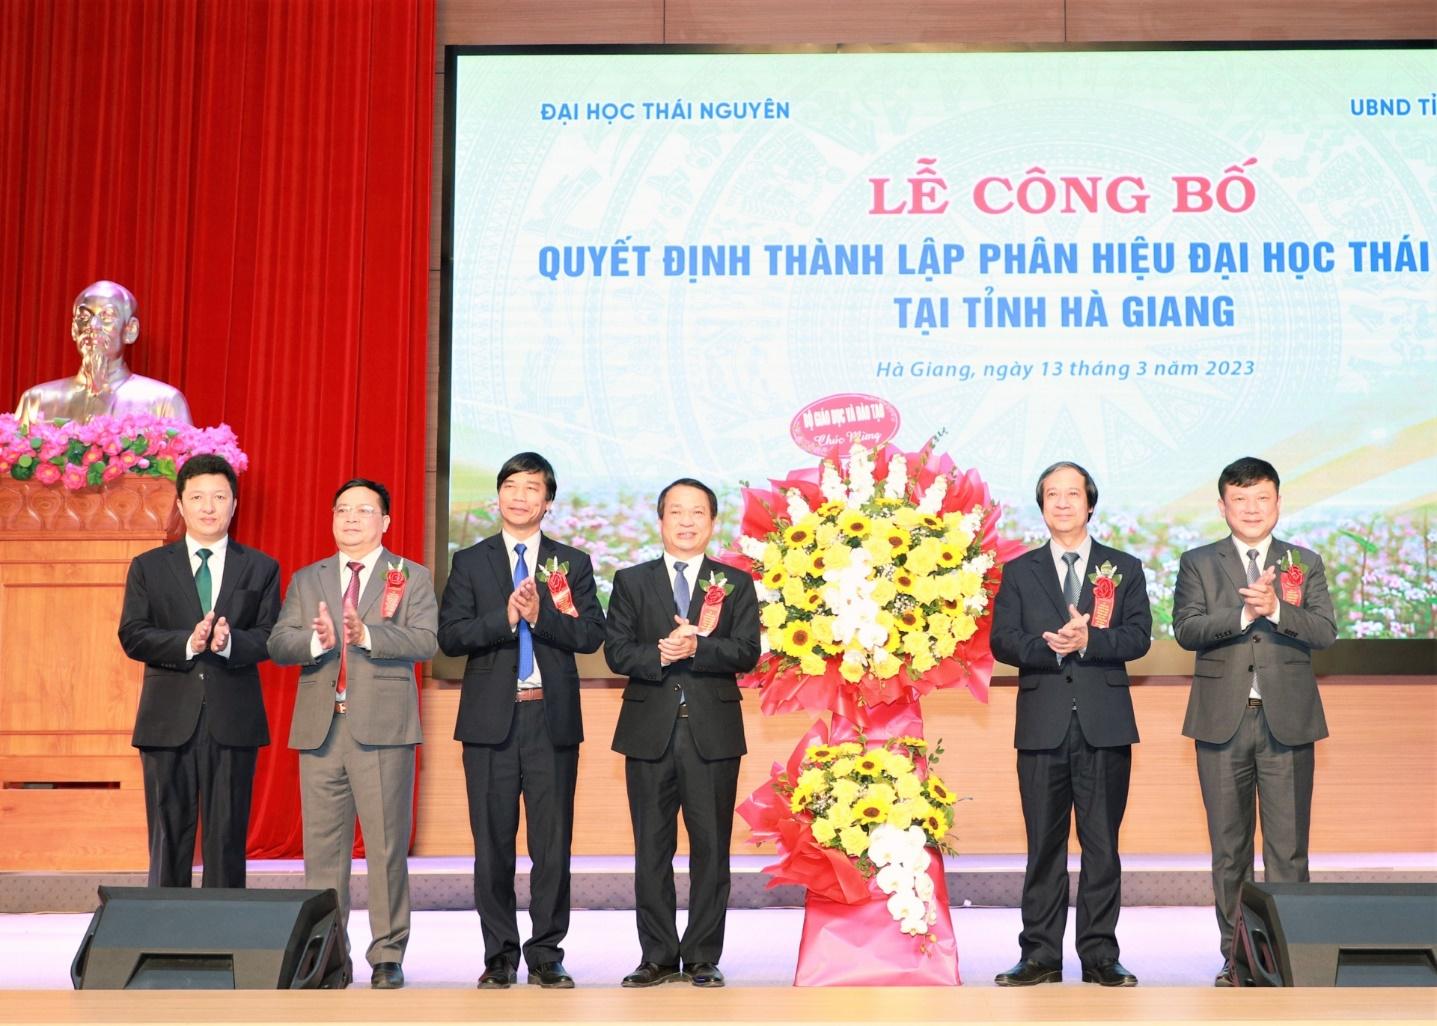 Bộ trưởng Bộ GD&ĐT Nguyễn Kim Sơn tặng hoa chúc mừng Phân hiệu Đại học Thái Nguyên tại tỉnh Hà Giang